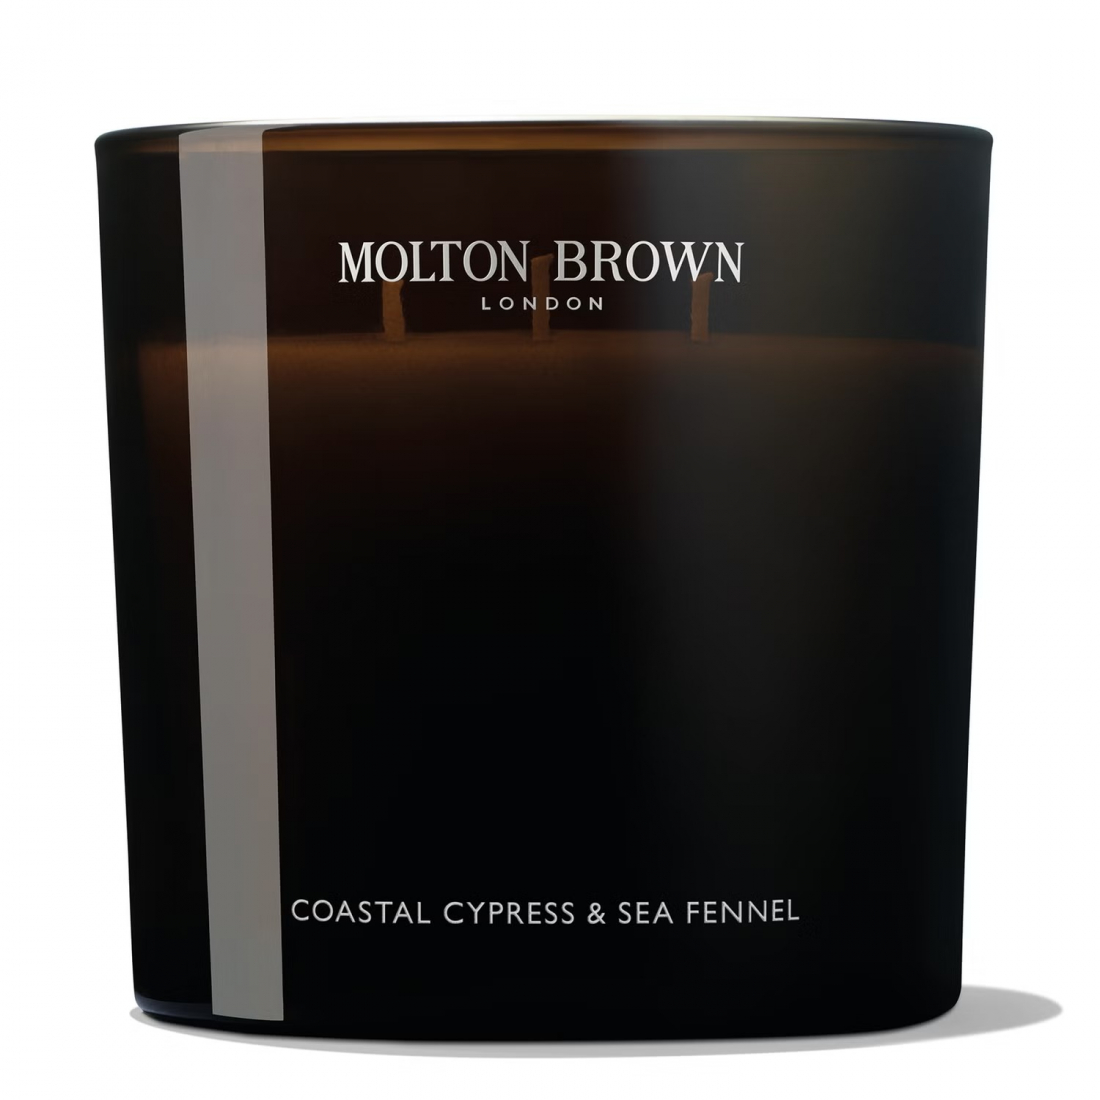 'Coastal Cypress & Sea Fennel' 3 Wicks Candle - 600 g